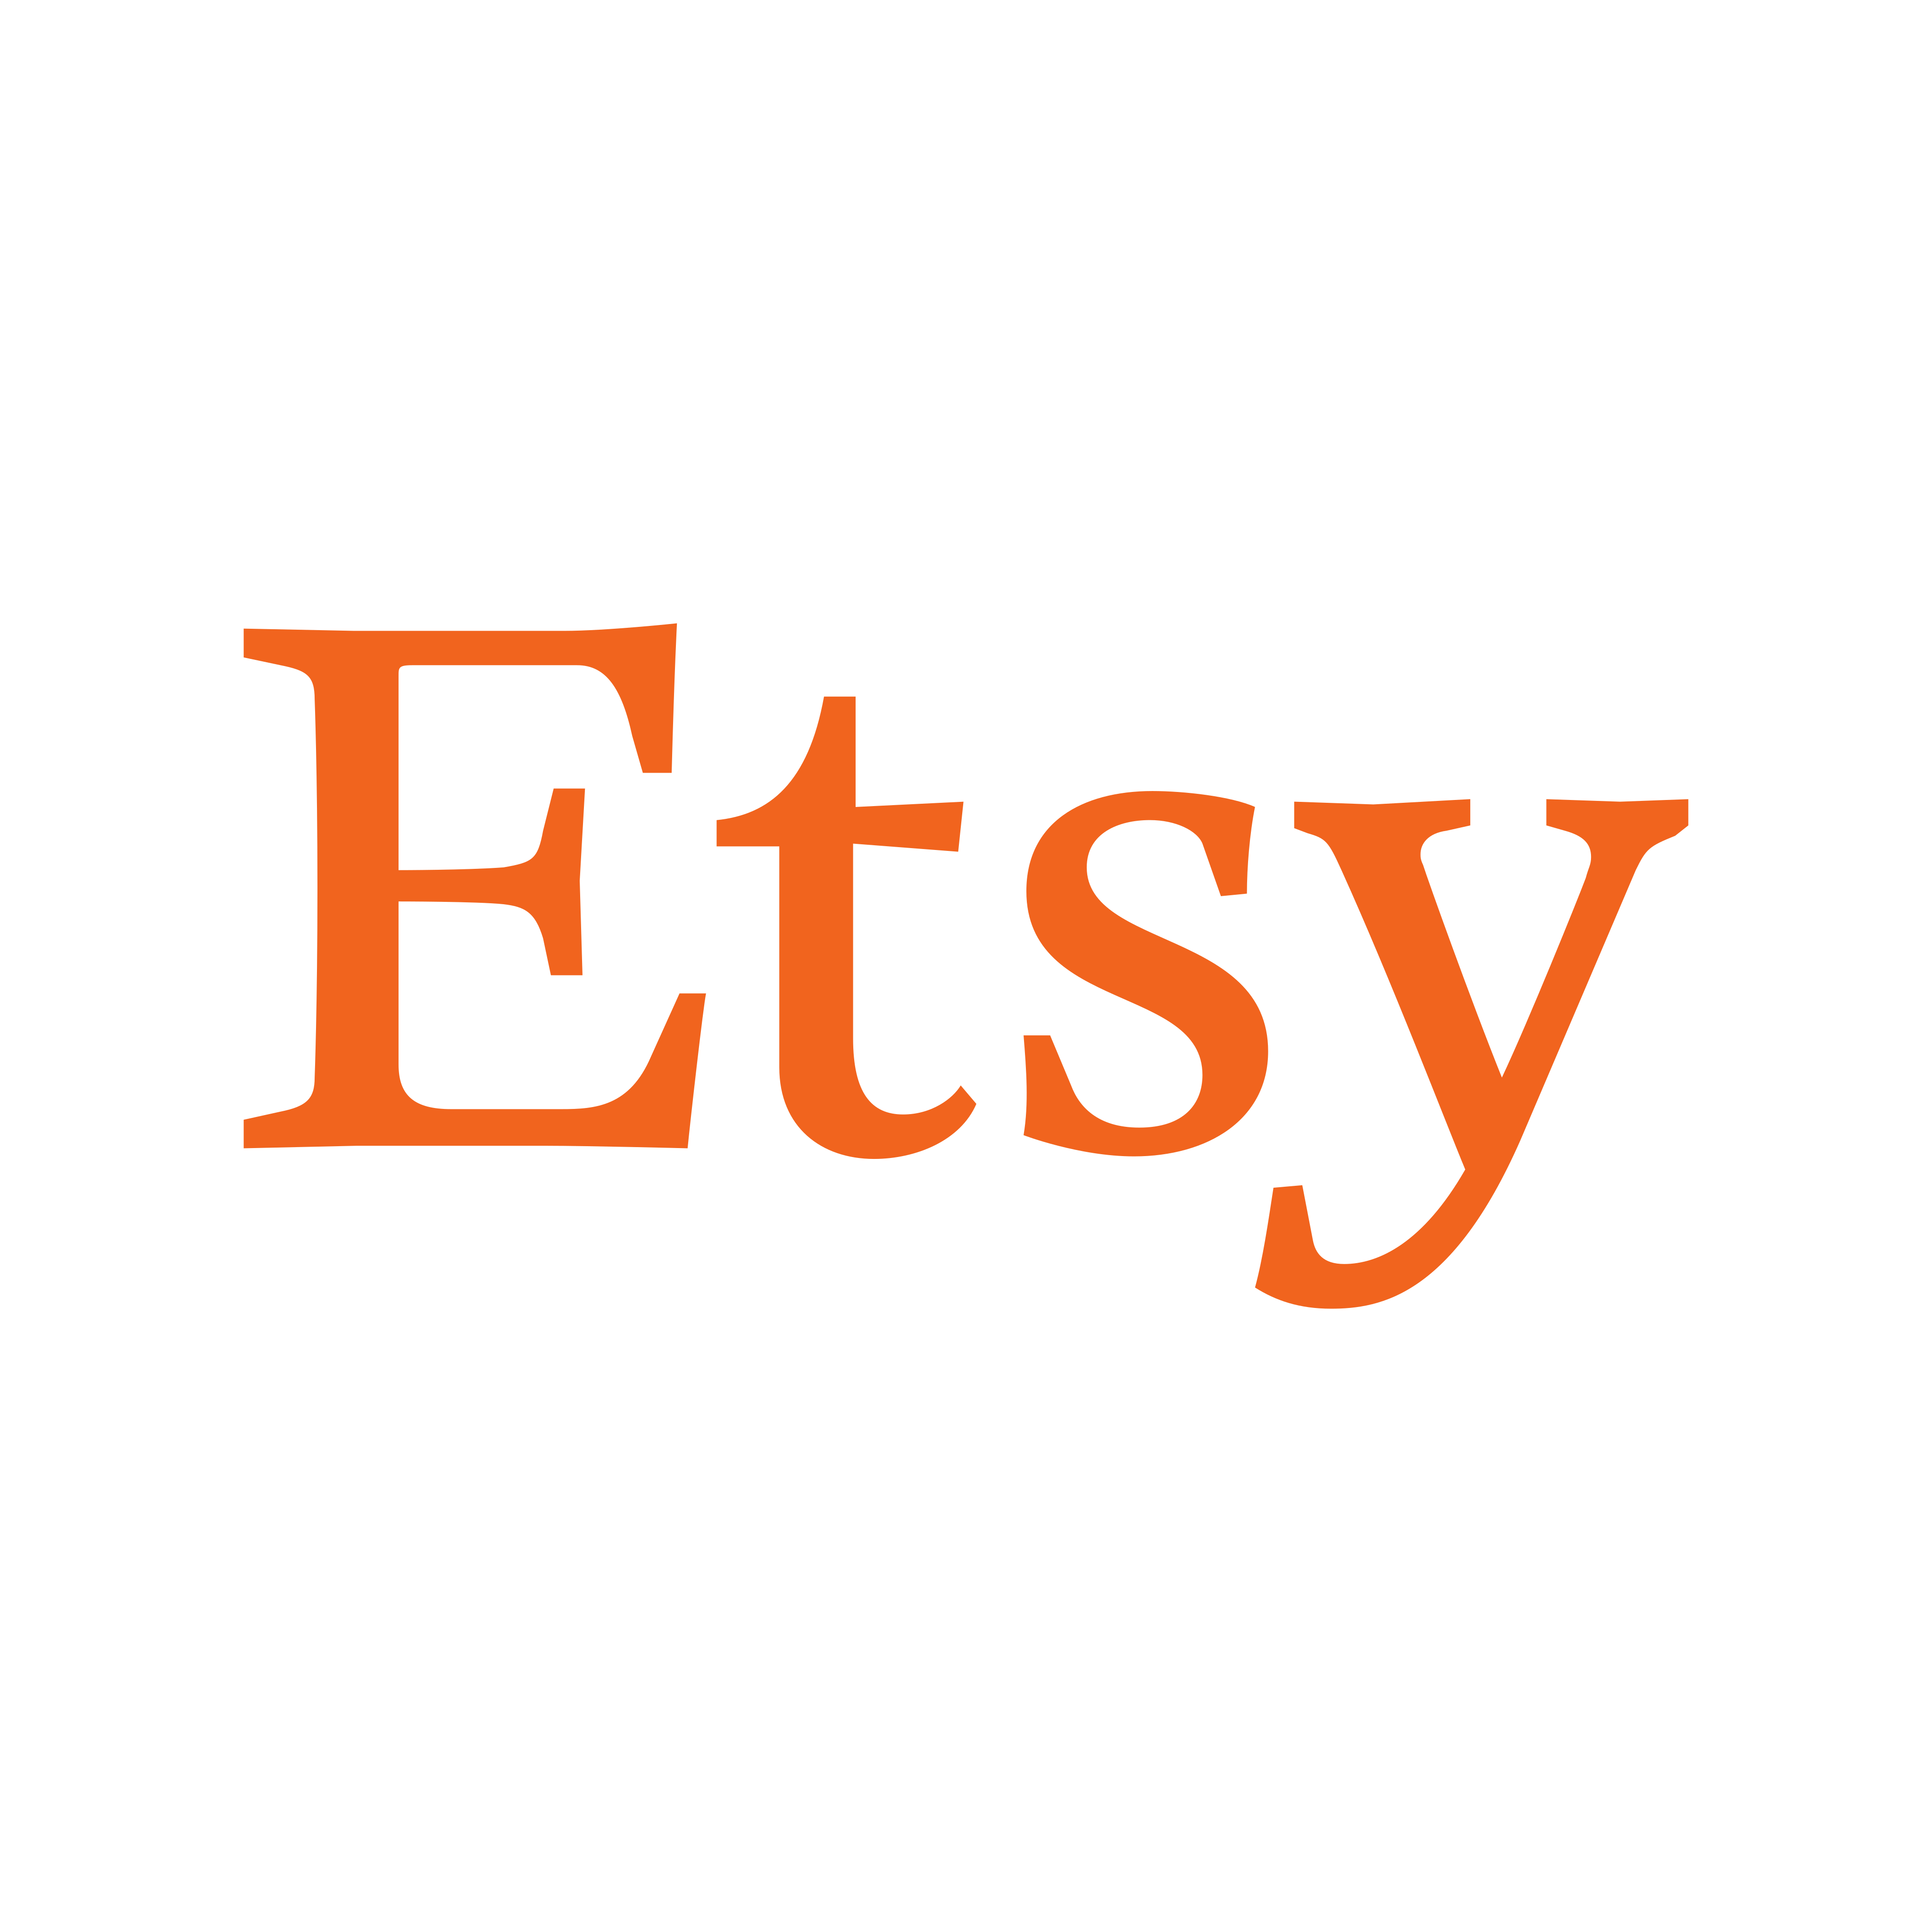 etsy logo 0 - Etsy Logo